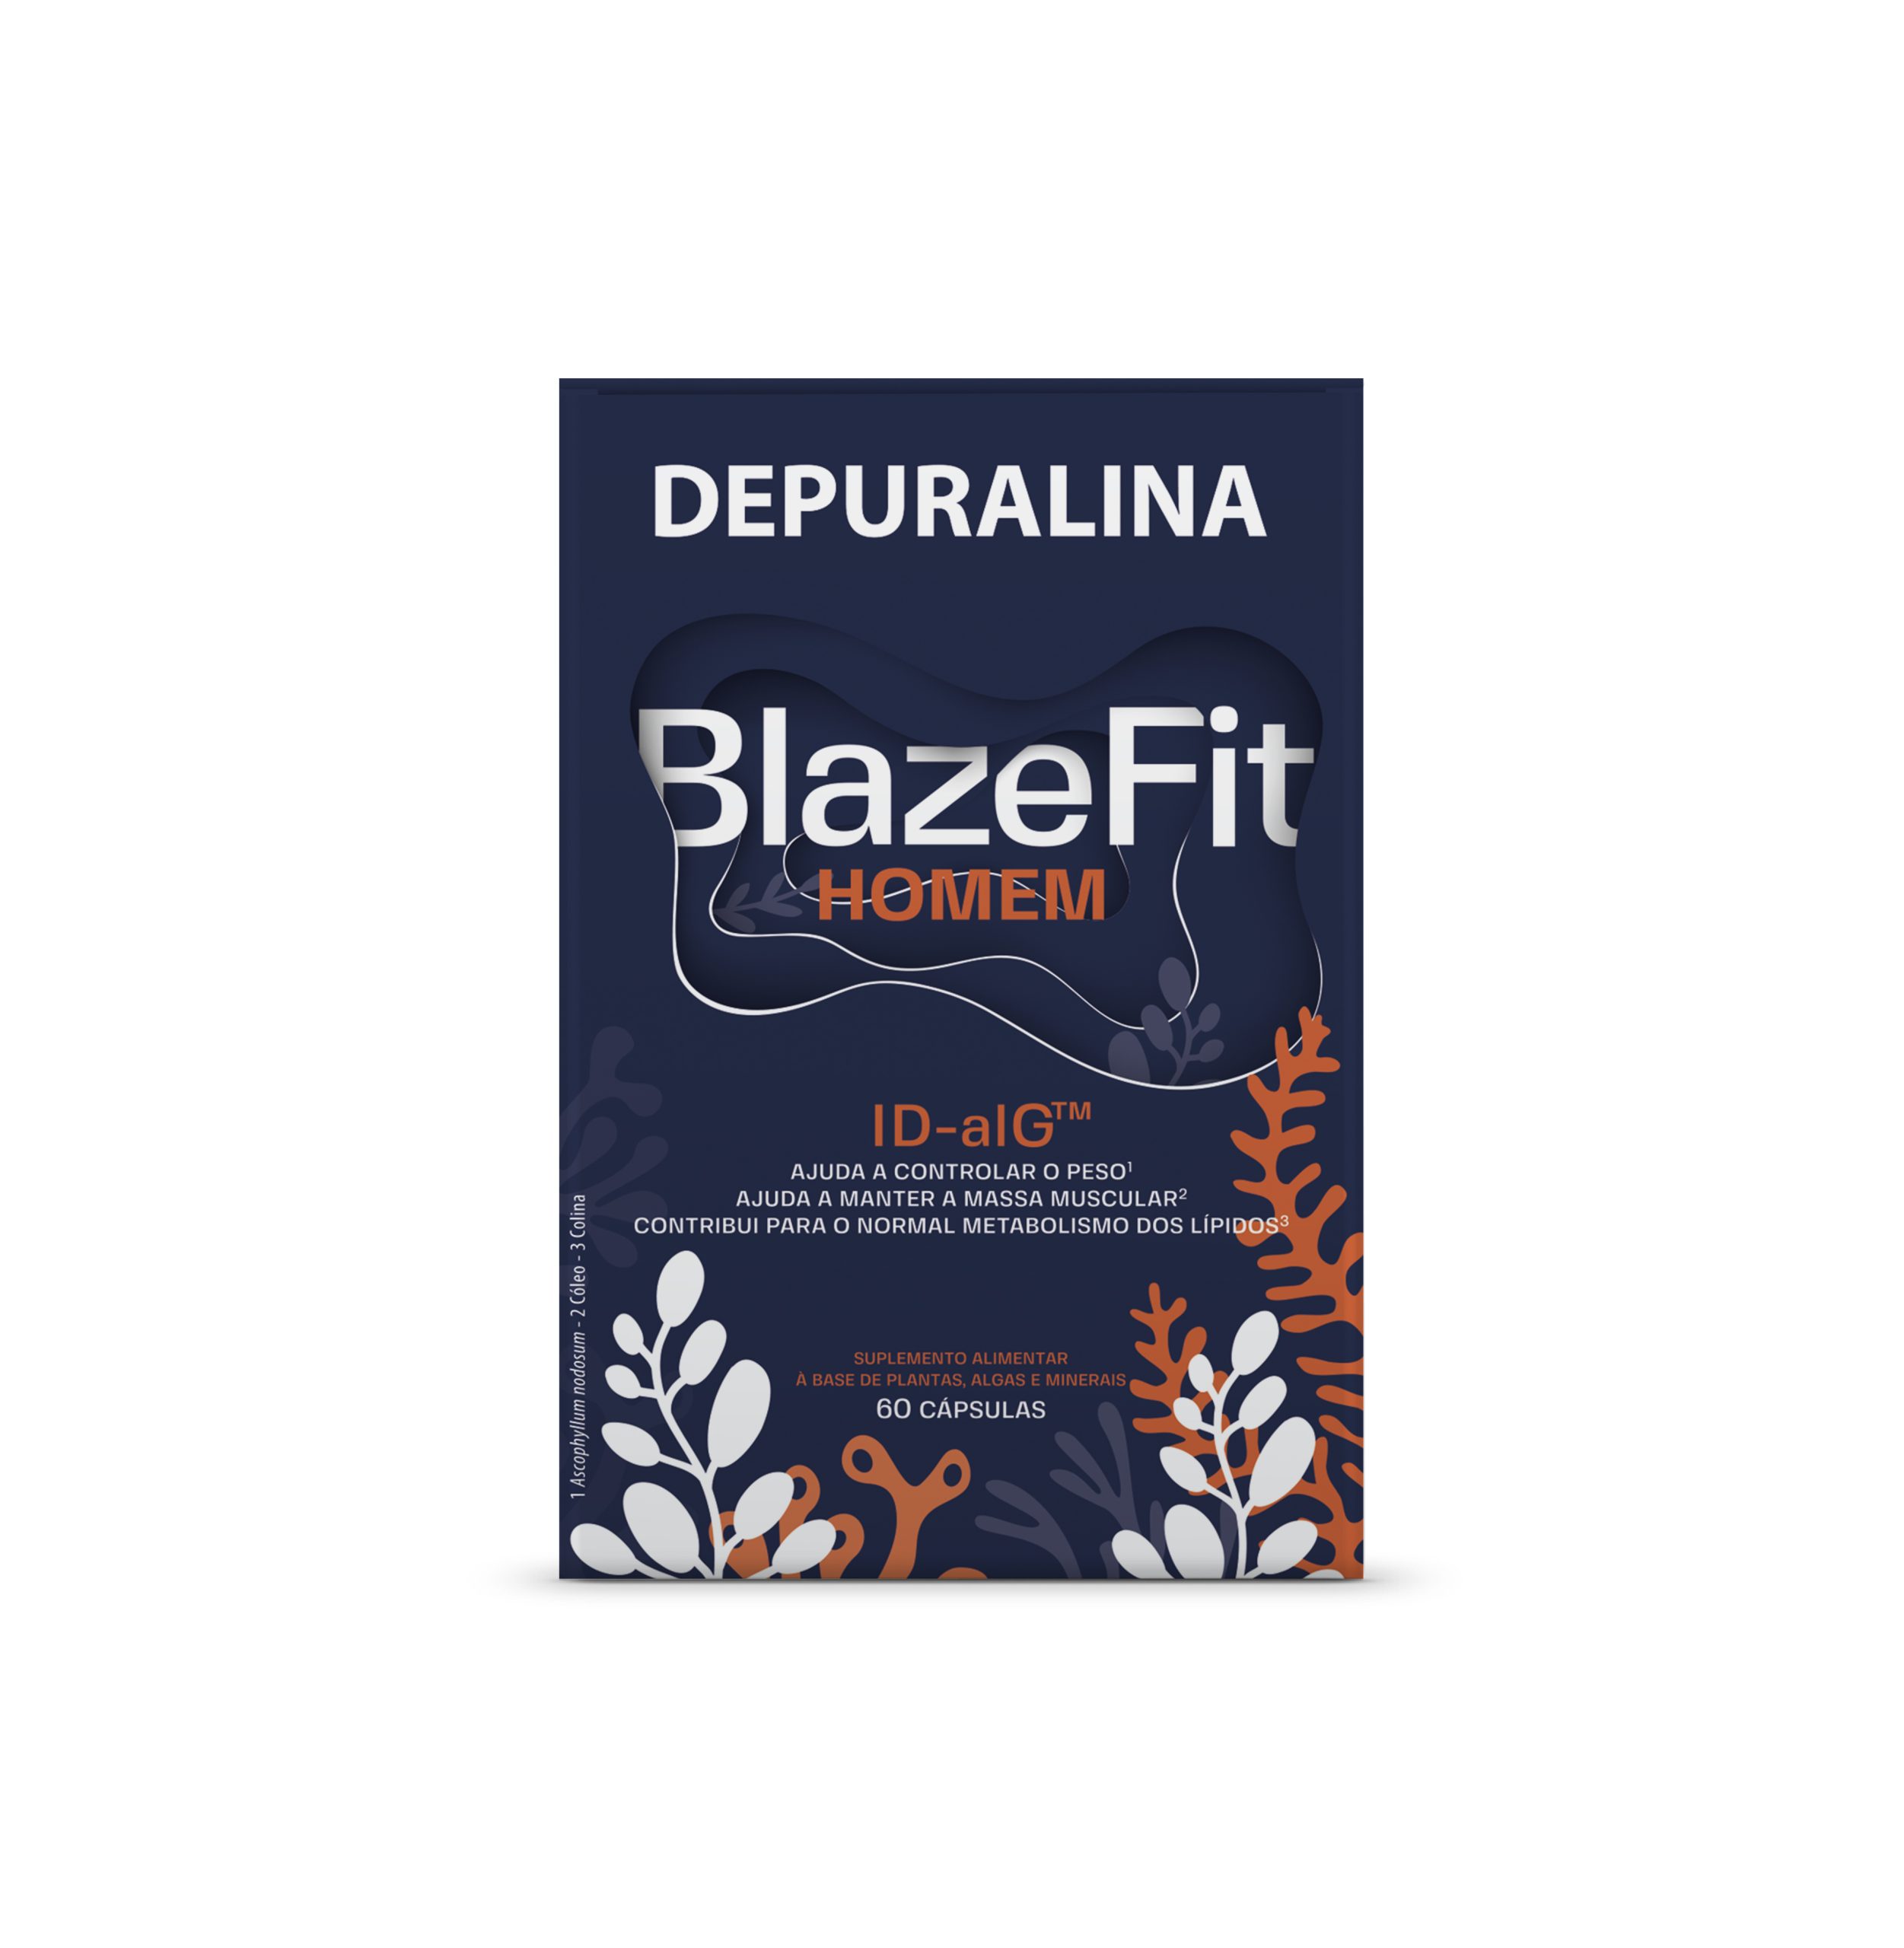 depuralina-blazefit-homem-60-capsulas-scaled-1.jpg